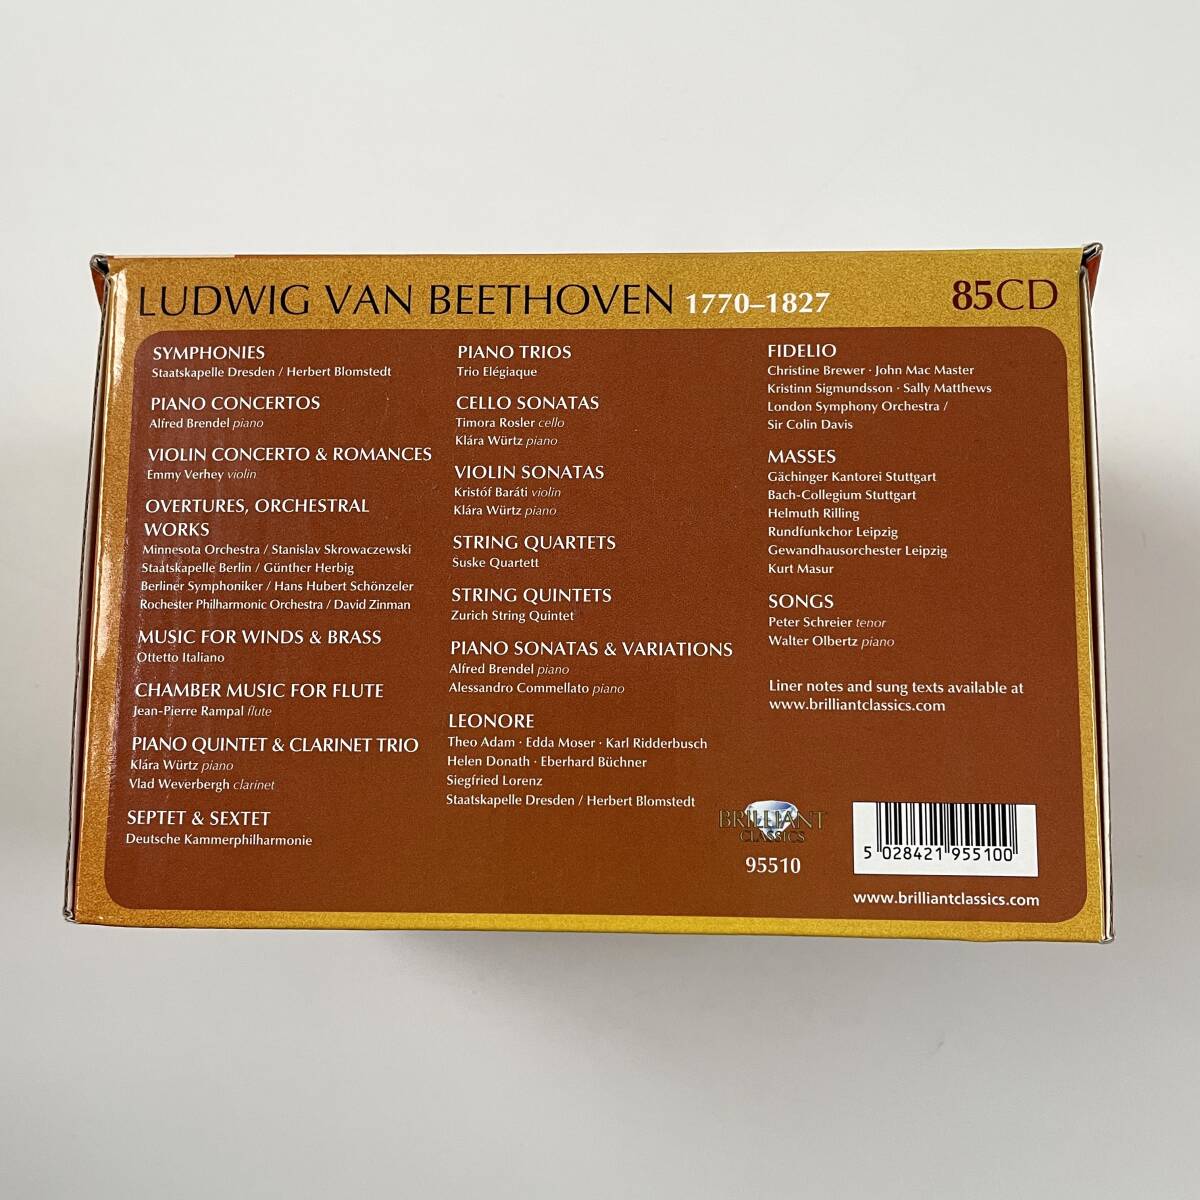 ベートーヴェン作品全集/85CD/BEETHOVEN Complete Edition/中古CDの画像2